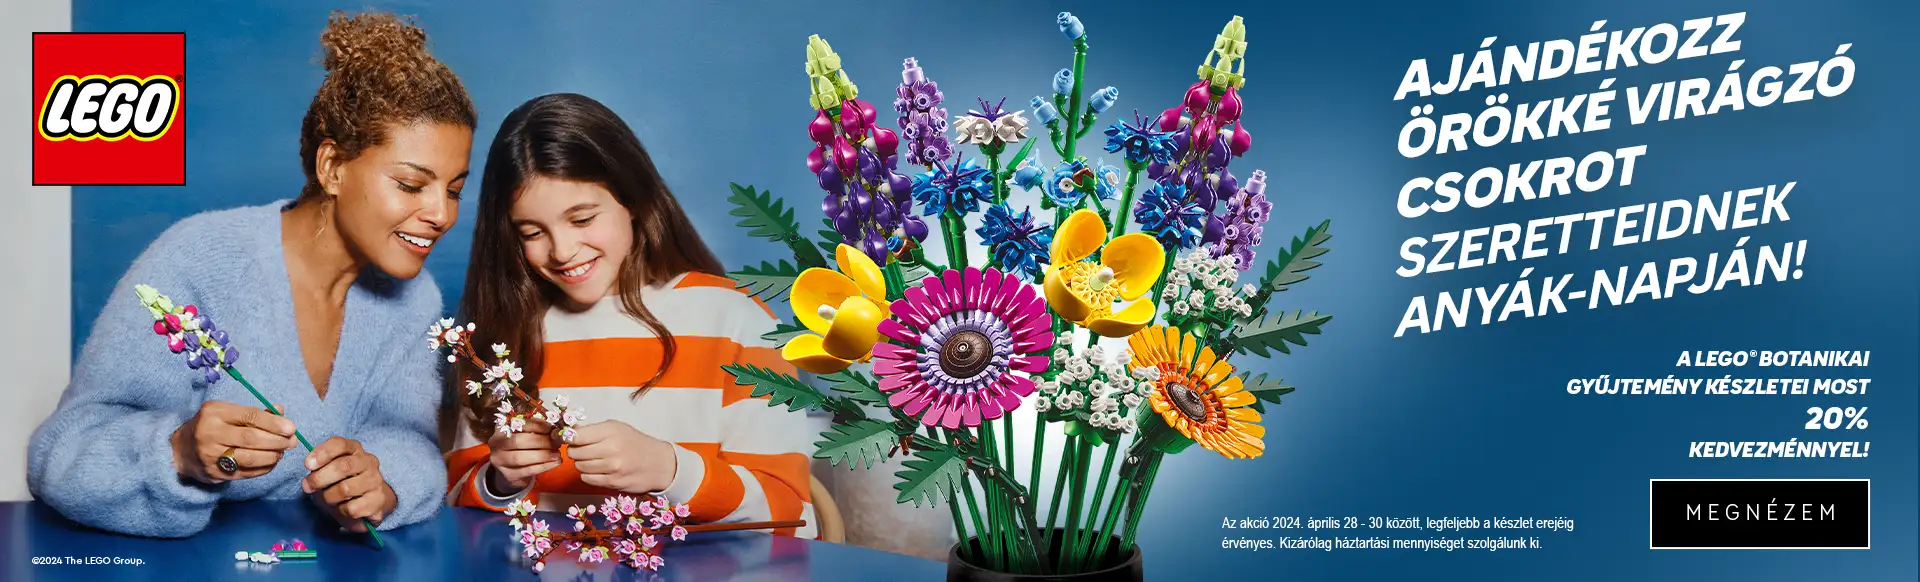 Ajándékozz örökké virágzó csokrot szeretteidnek Anyák napján! 2024. április 28-30 között 20% kedvezmény minden LEGO Botanikai gyűjtemény termékre!